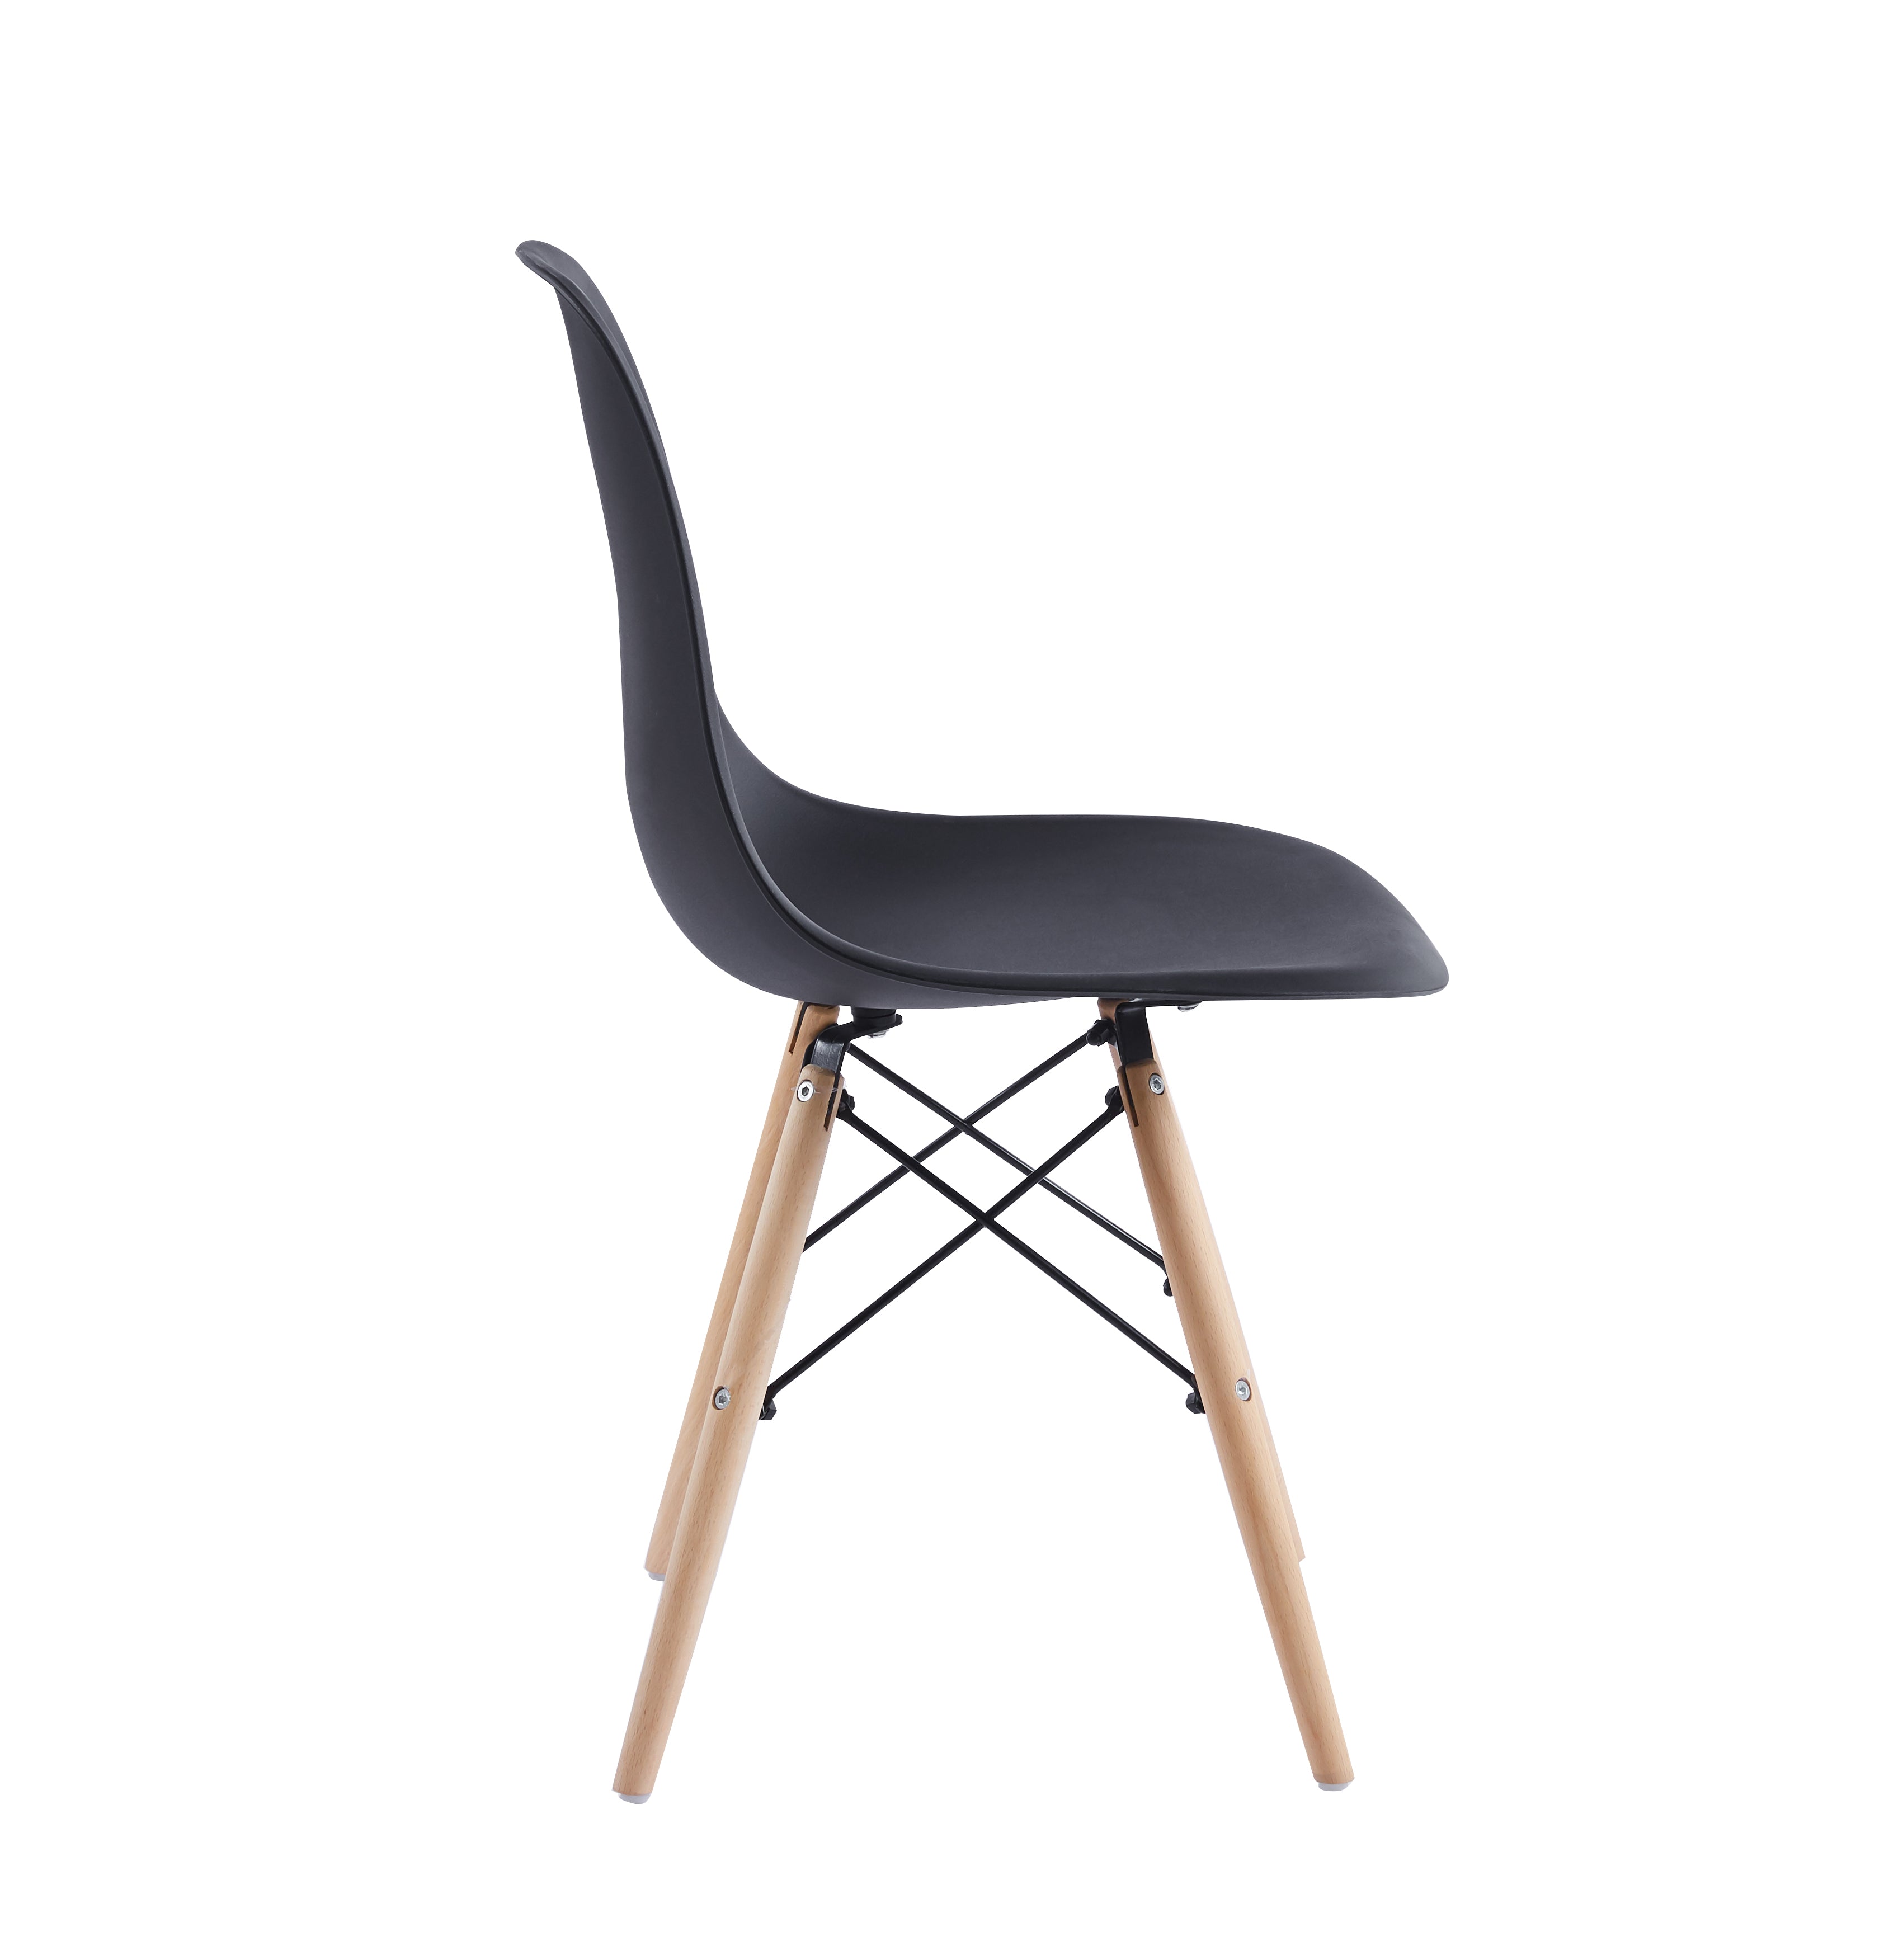 Velets Set of 4 Eifel Plastic Side Chair / Dining Chair - Wooden Leg - Black